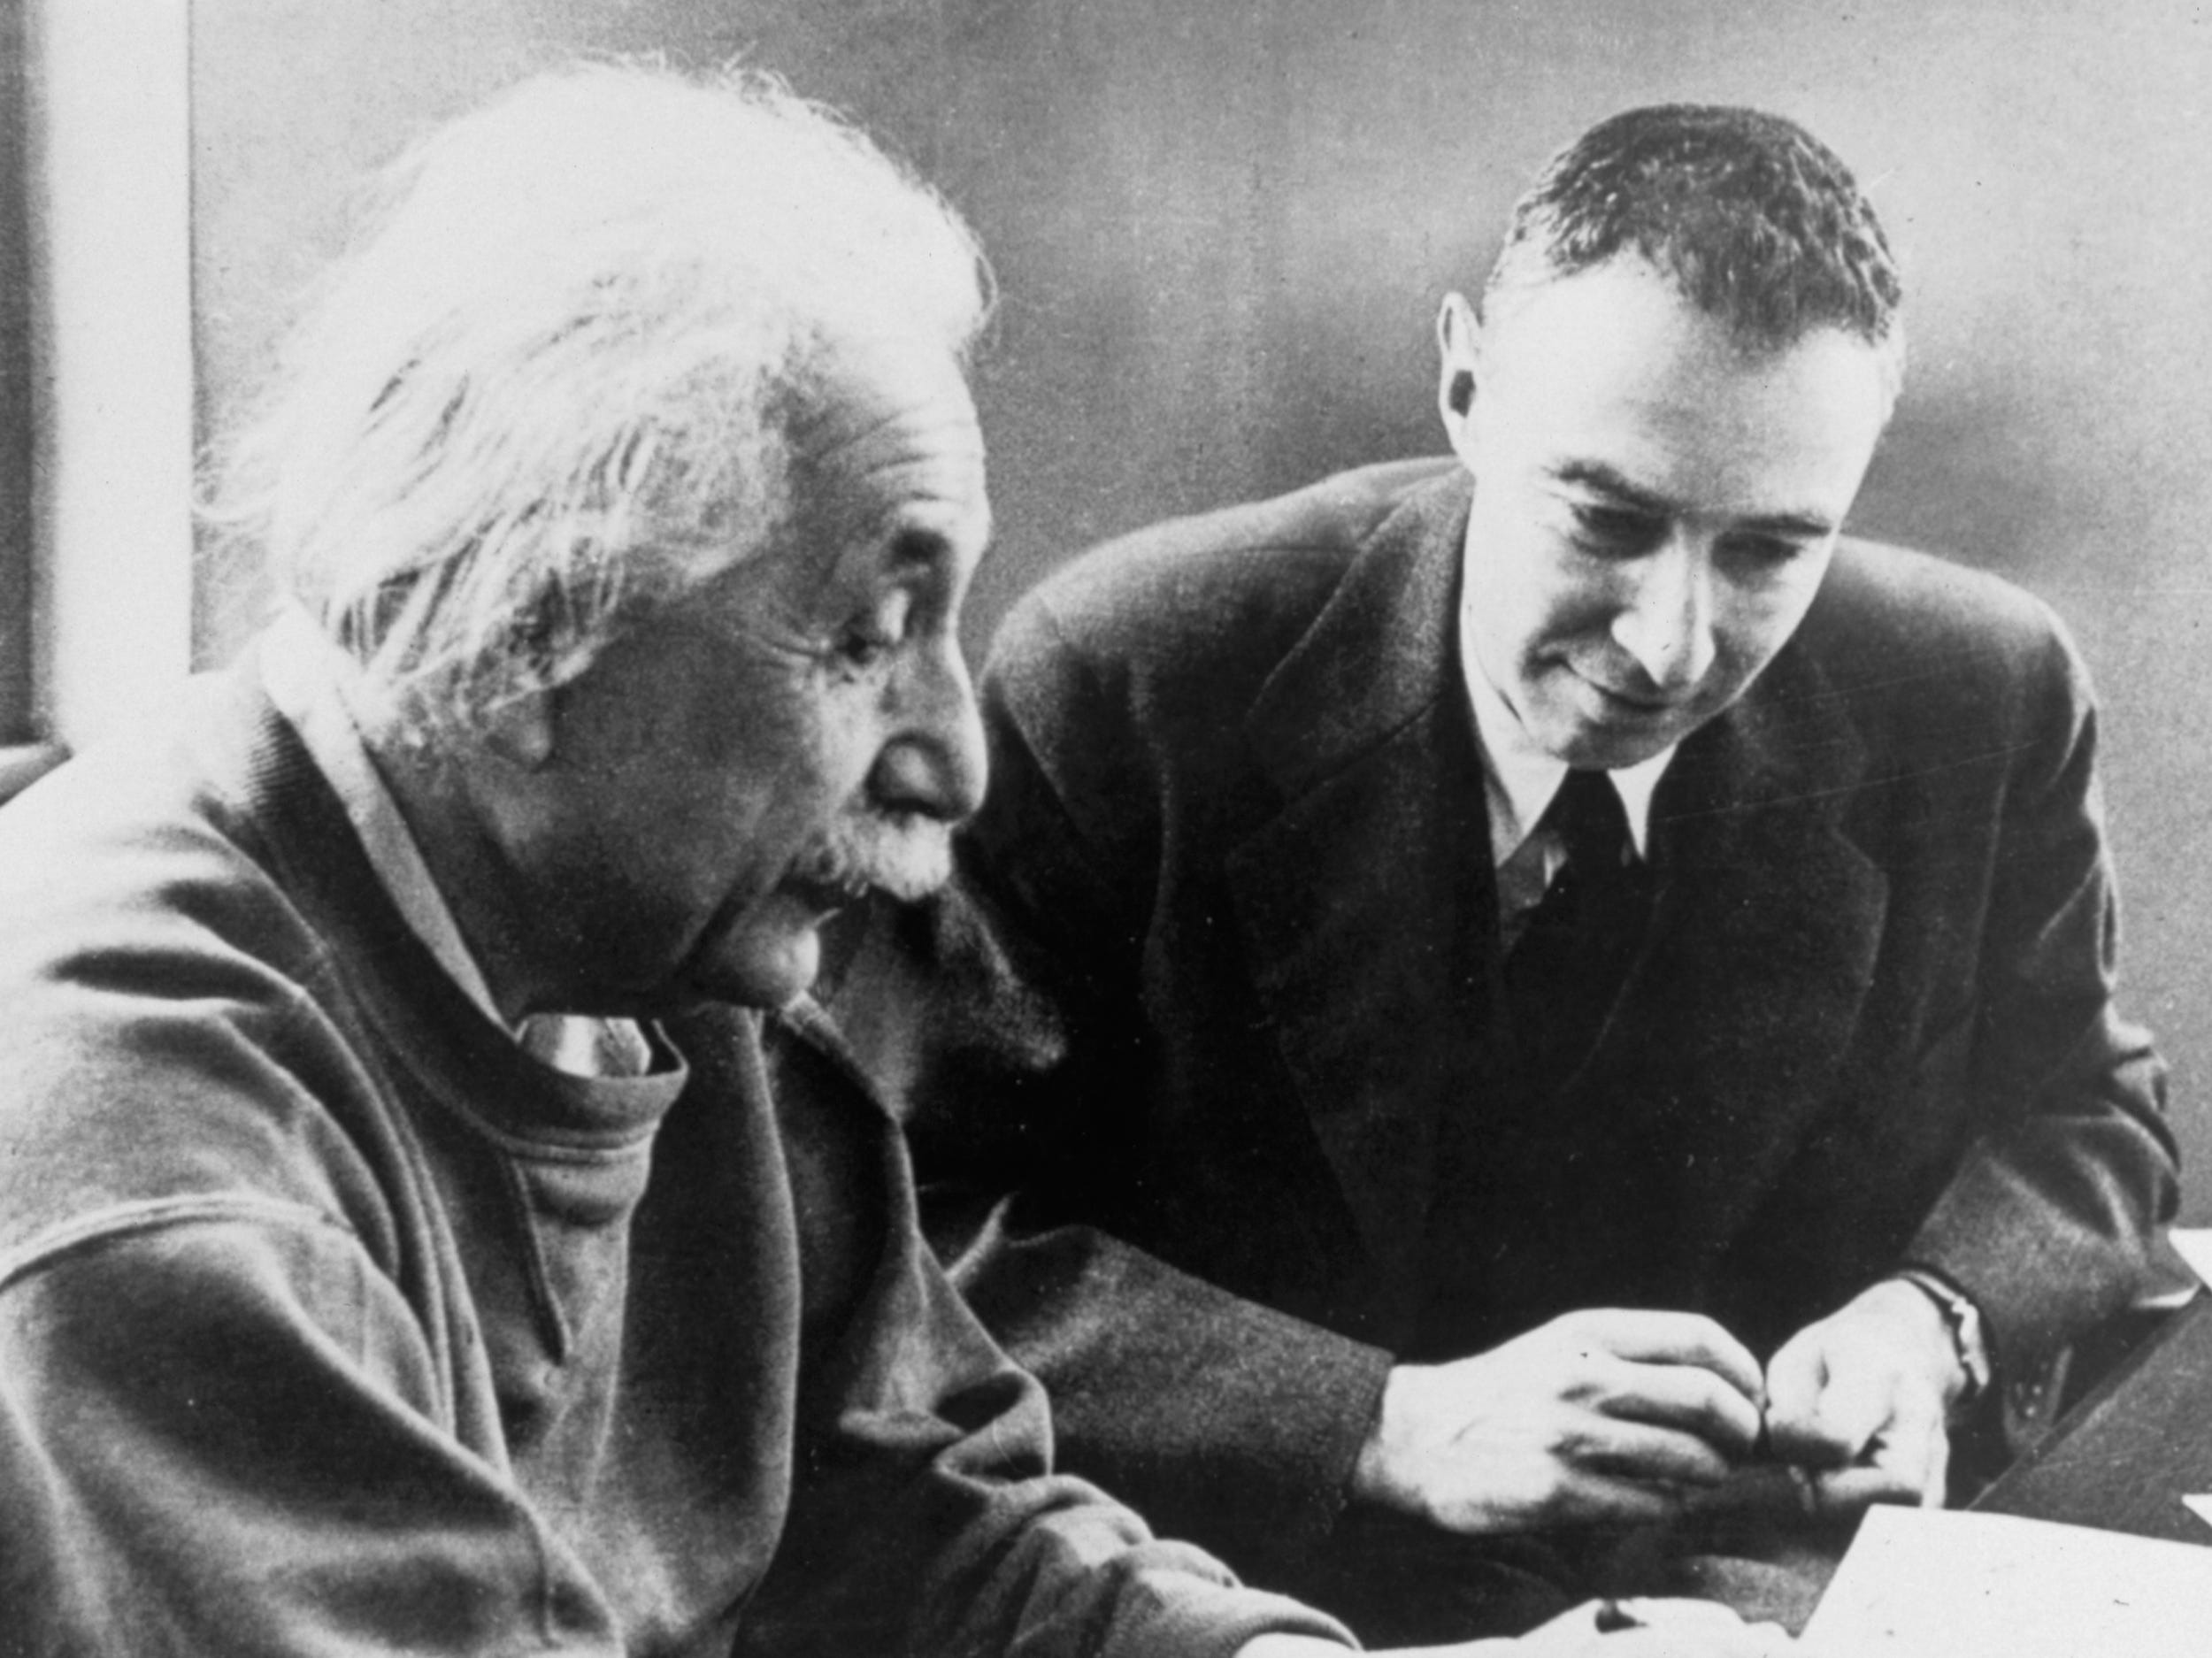 Ein Schwarzweißfoto von J. Robert Oppenheimer mit Albert Einstein.